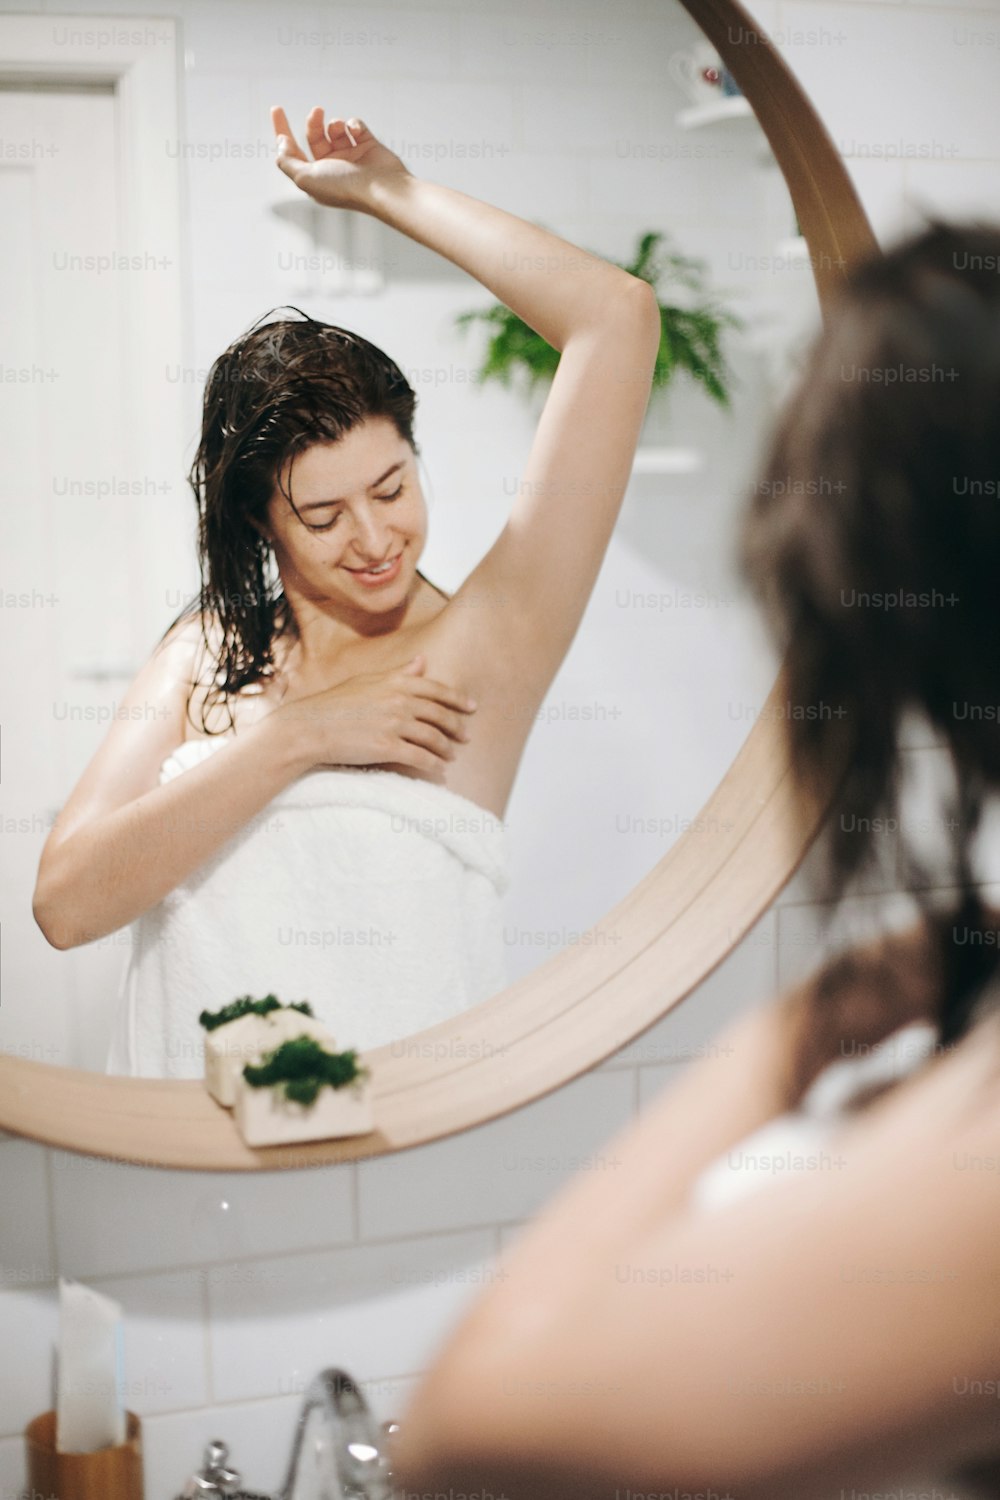 Giovane donna attraente con i capelli bagnati in un asciugamano bianco che guarda la pelle liscia e morbida dopo la rasatura delle ascelle, riflesso nello specchio in un bagno elegante con verde. Cura della pelle e del corpo, concetto di benessere